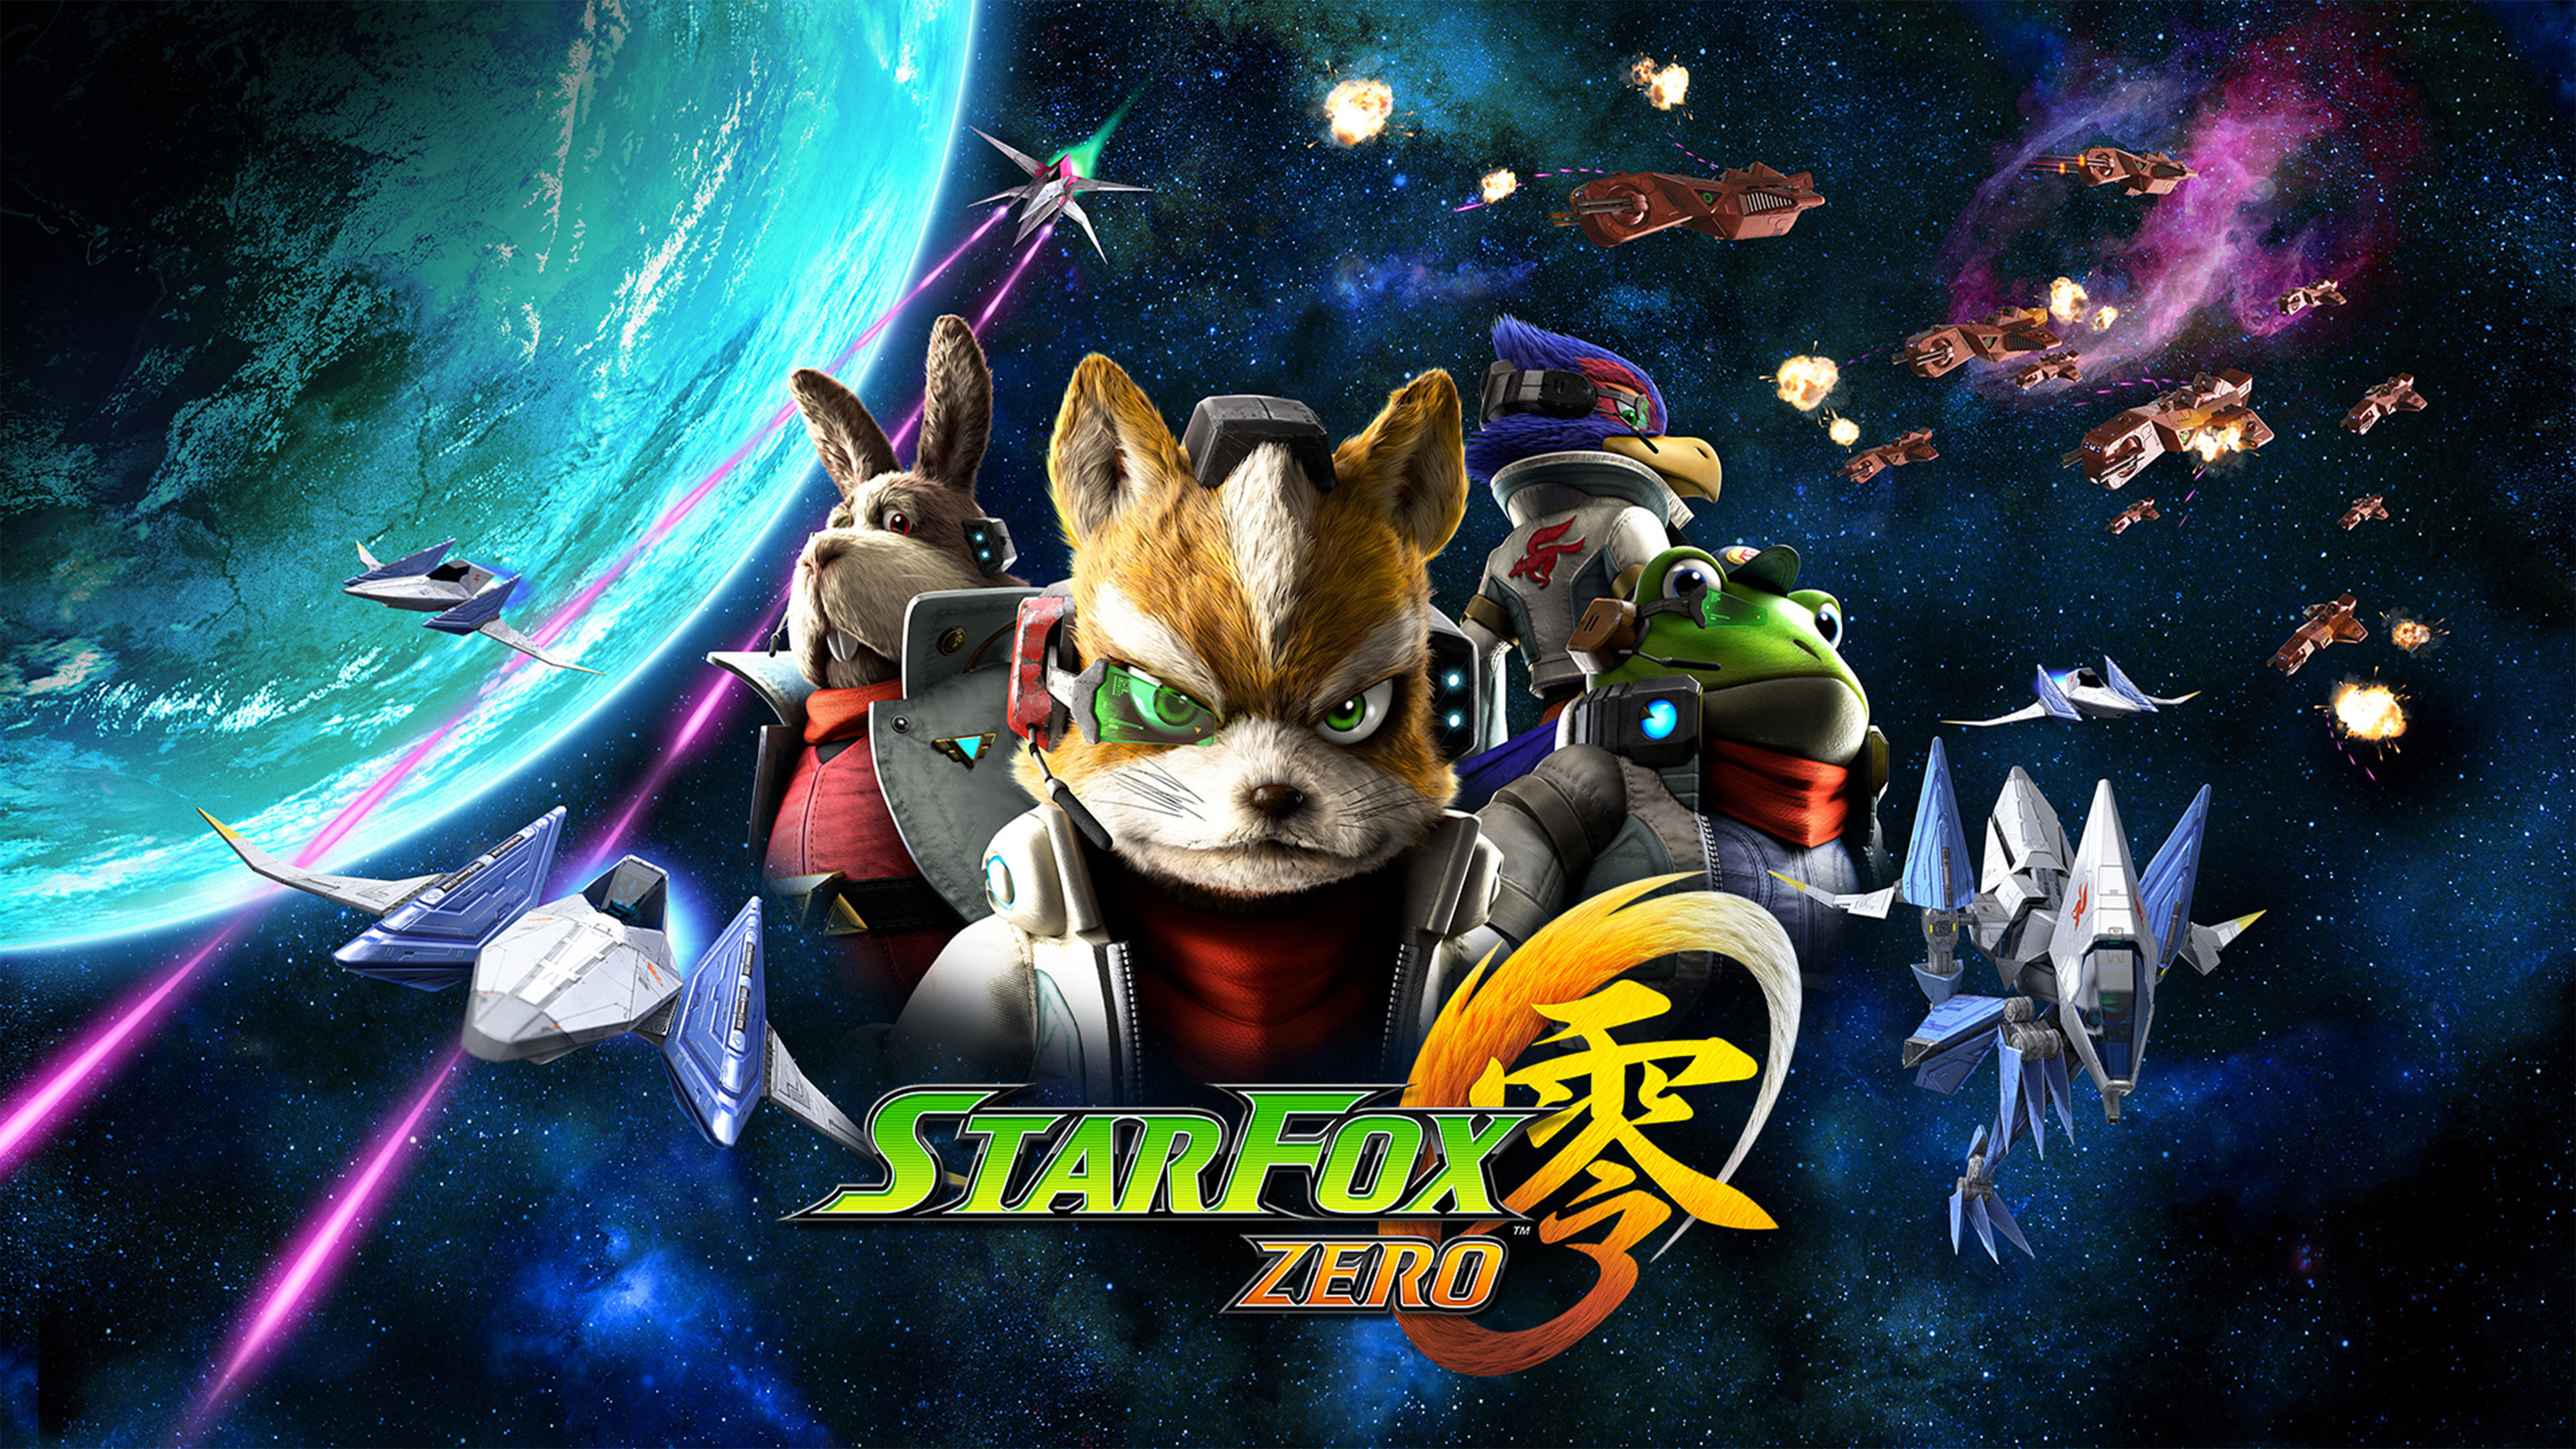 Star Fox Zero Wallpapers in Ultra HD 4K